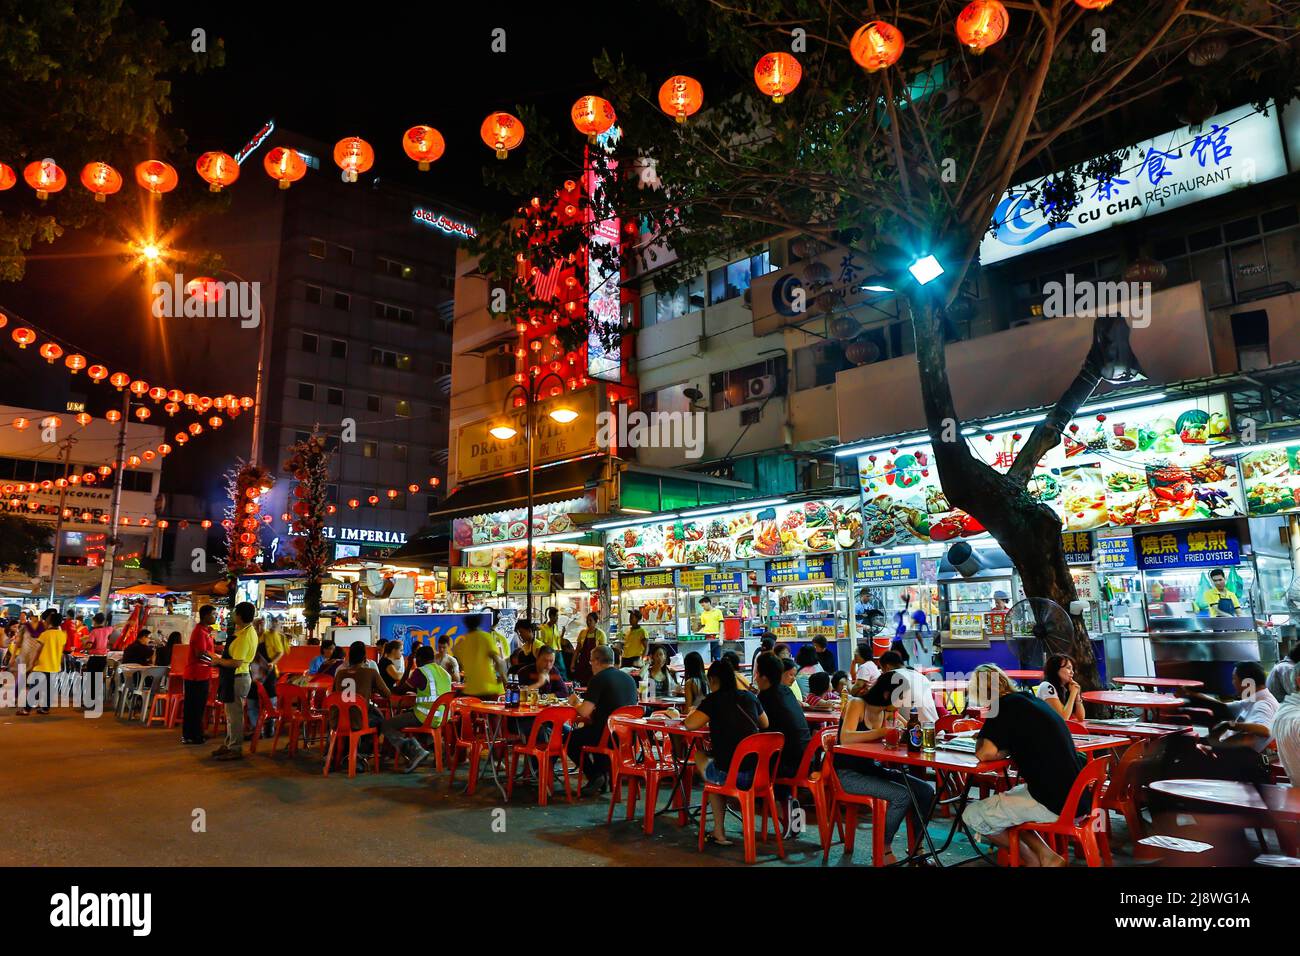 Kuala Lumpur; Malaysia - 2. Dezember 2015: Straßenszene von Jalan Alor ein beliebtes Restaurant- und Gastronomiegebiet in der Bukit Bintang Gegend von Kuala Lumpur Stockfoto